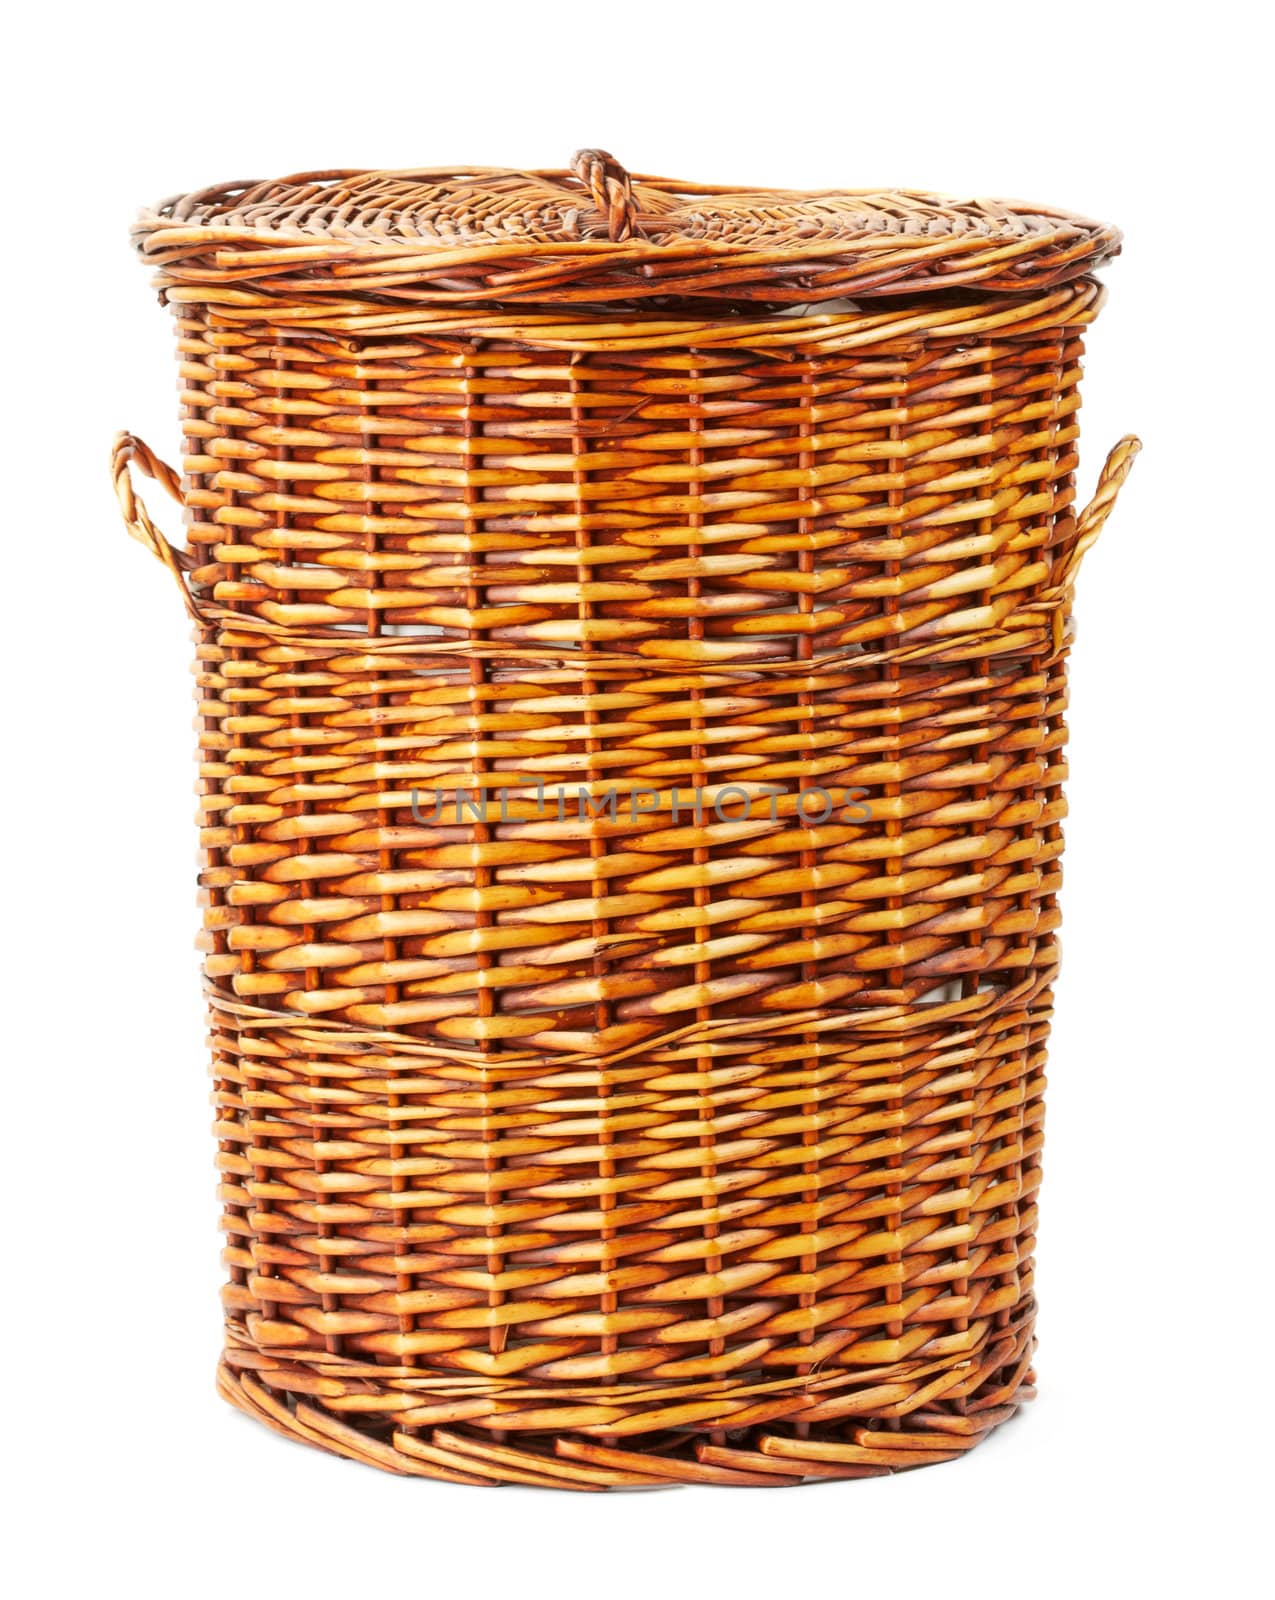 wooden laundry basket isolated on white background